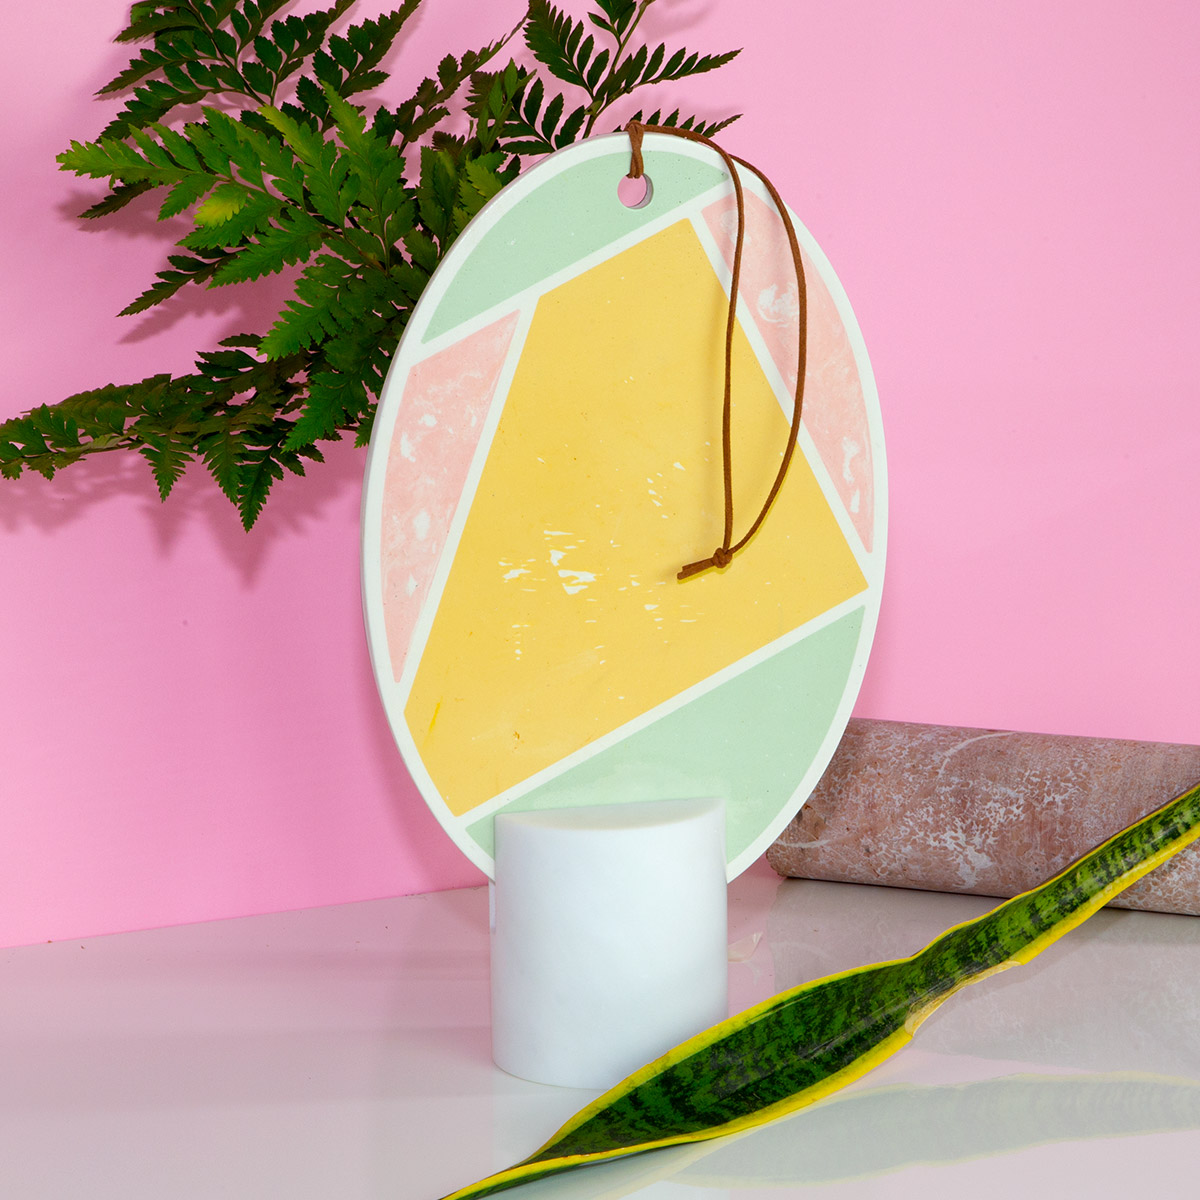 Specchio design Poudre Oval by Atelier Macramé